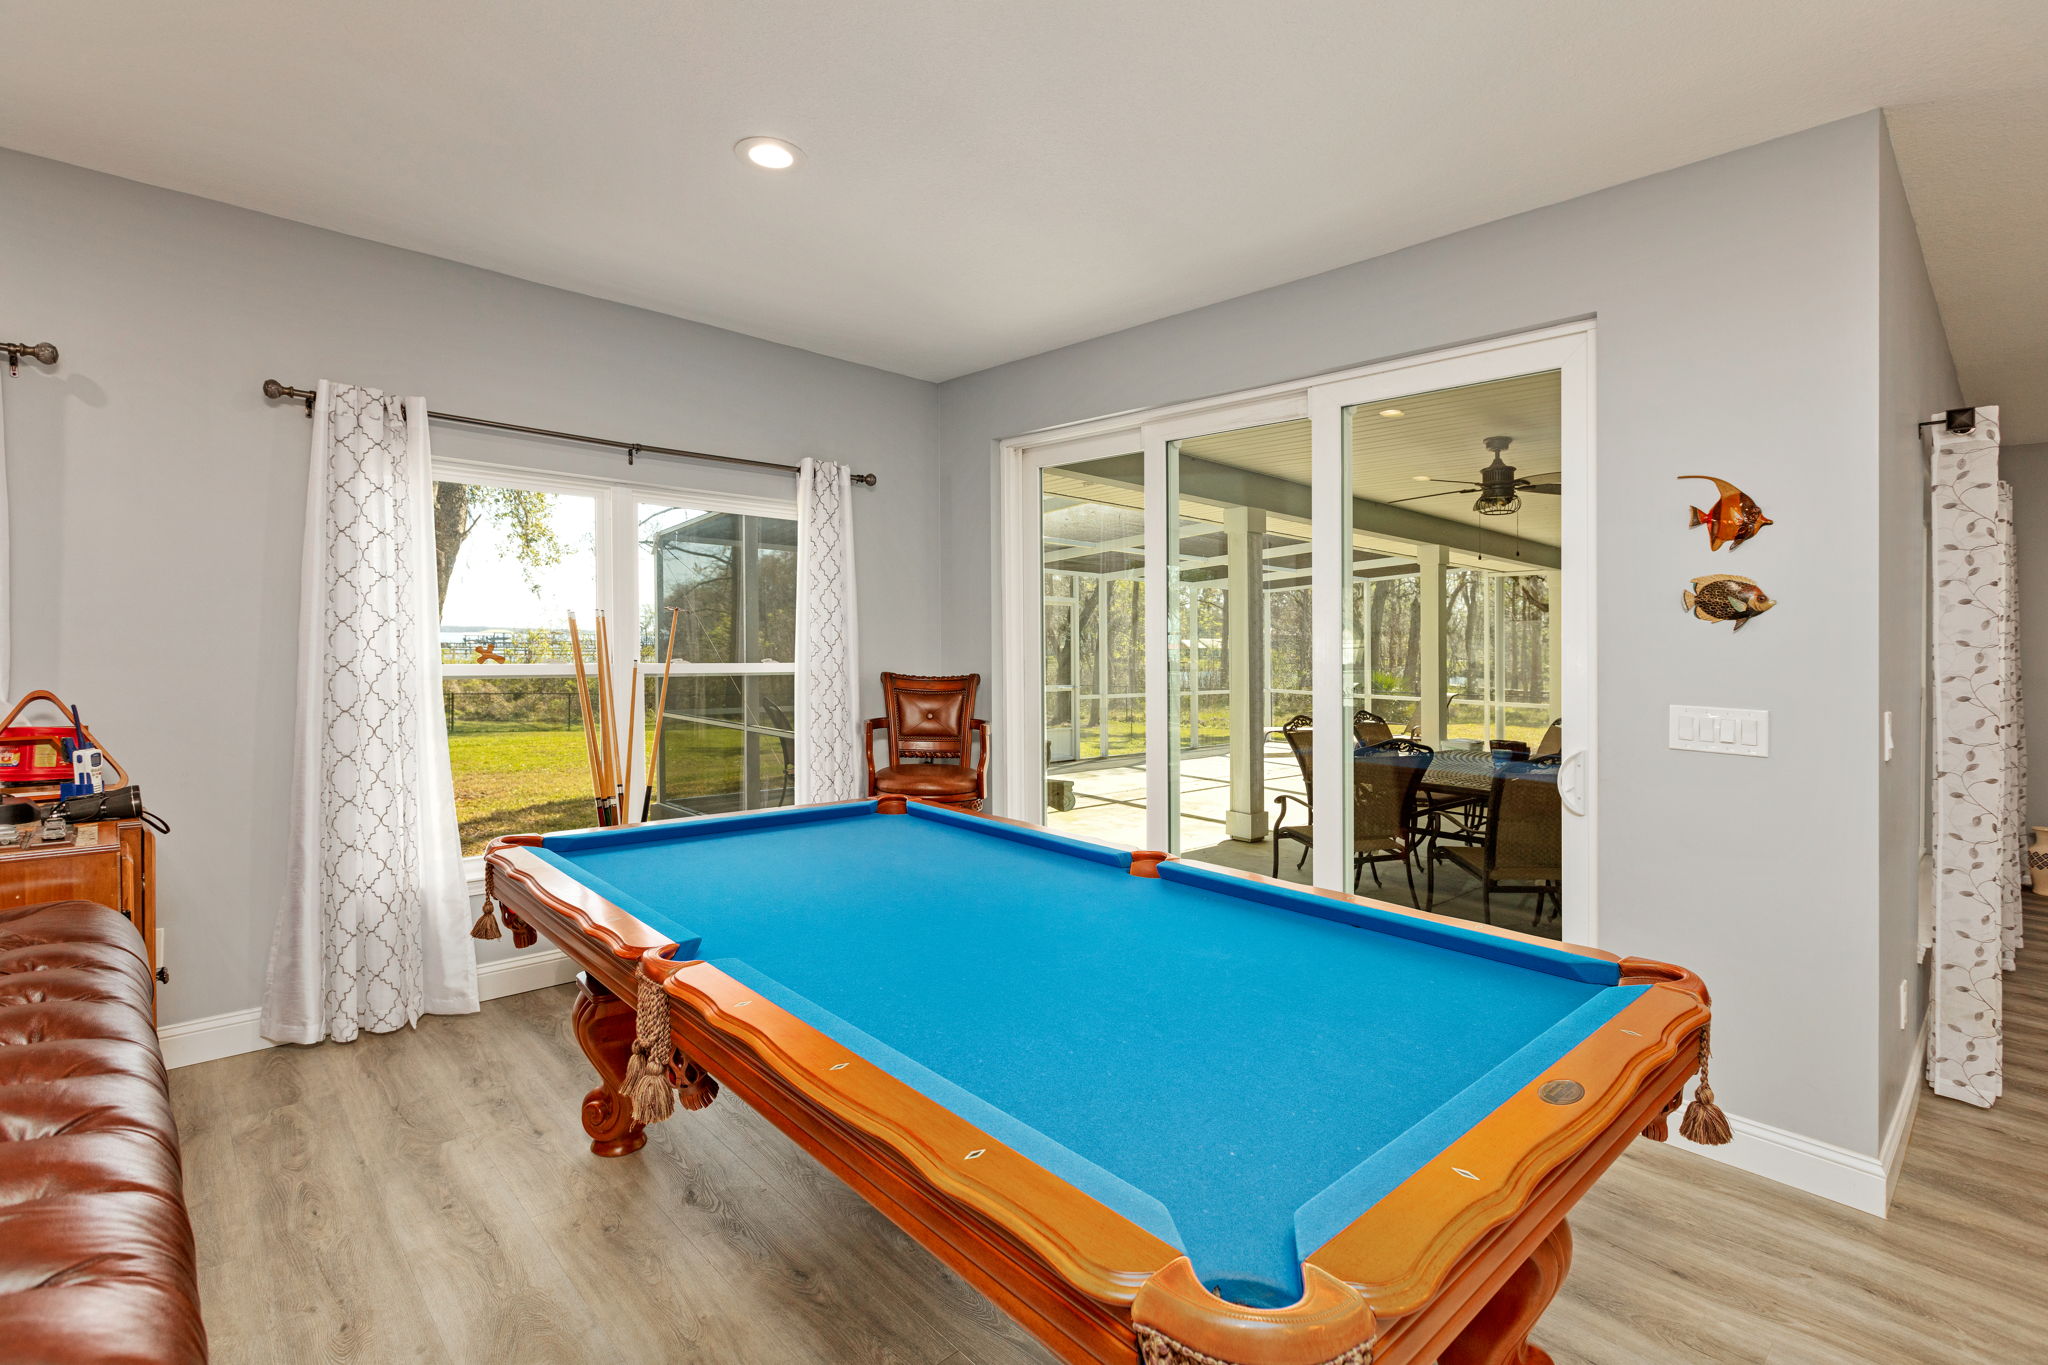 Billiards Area/Outdoor living Area